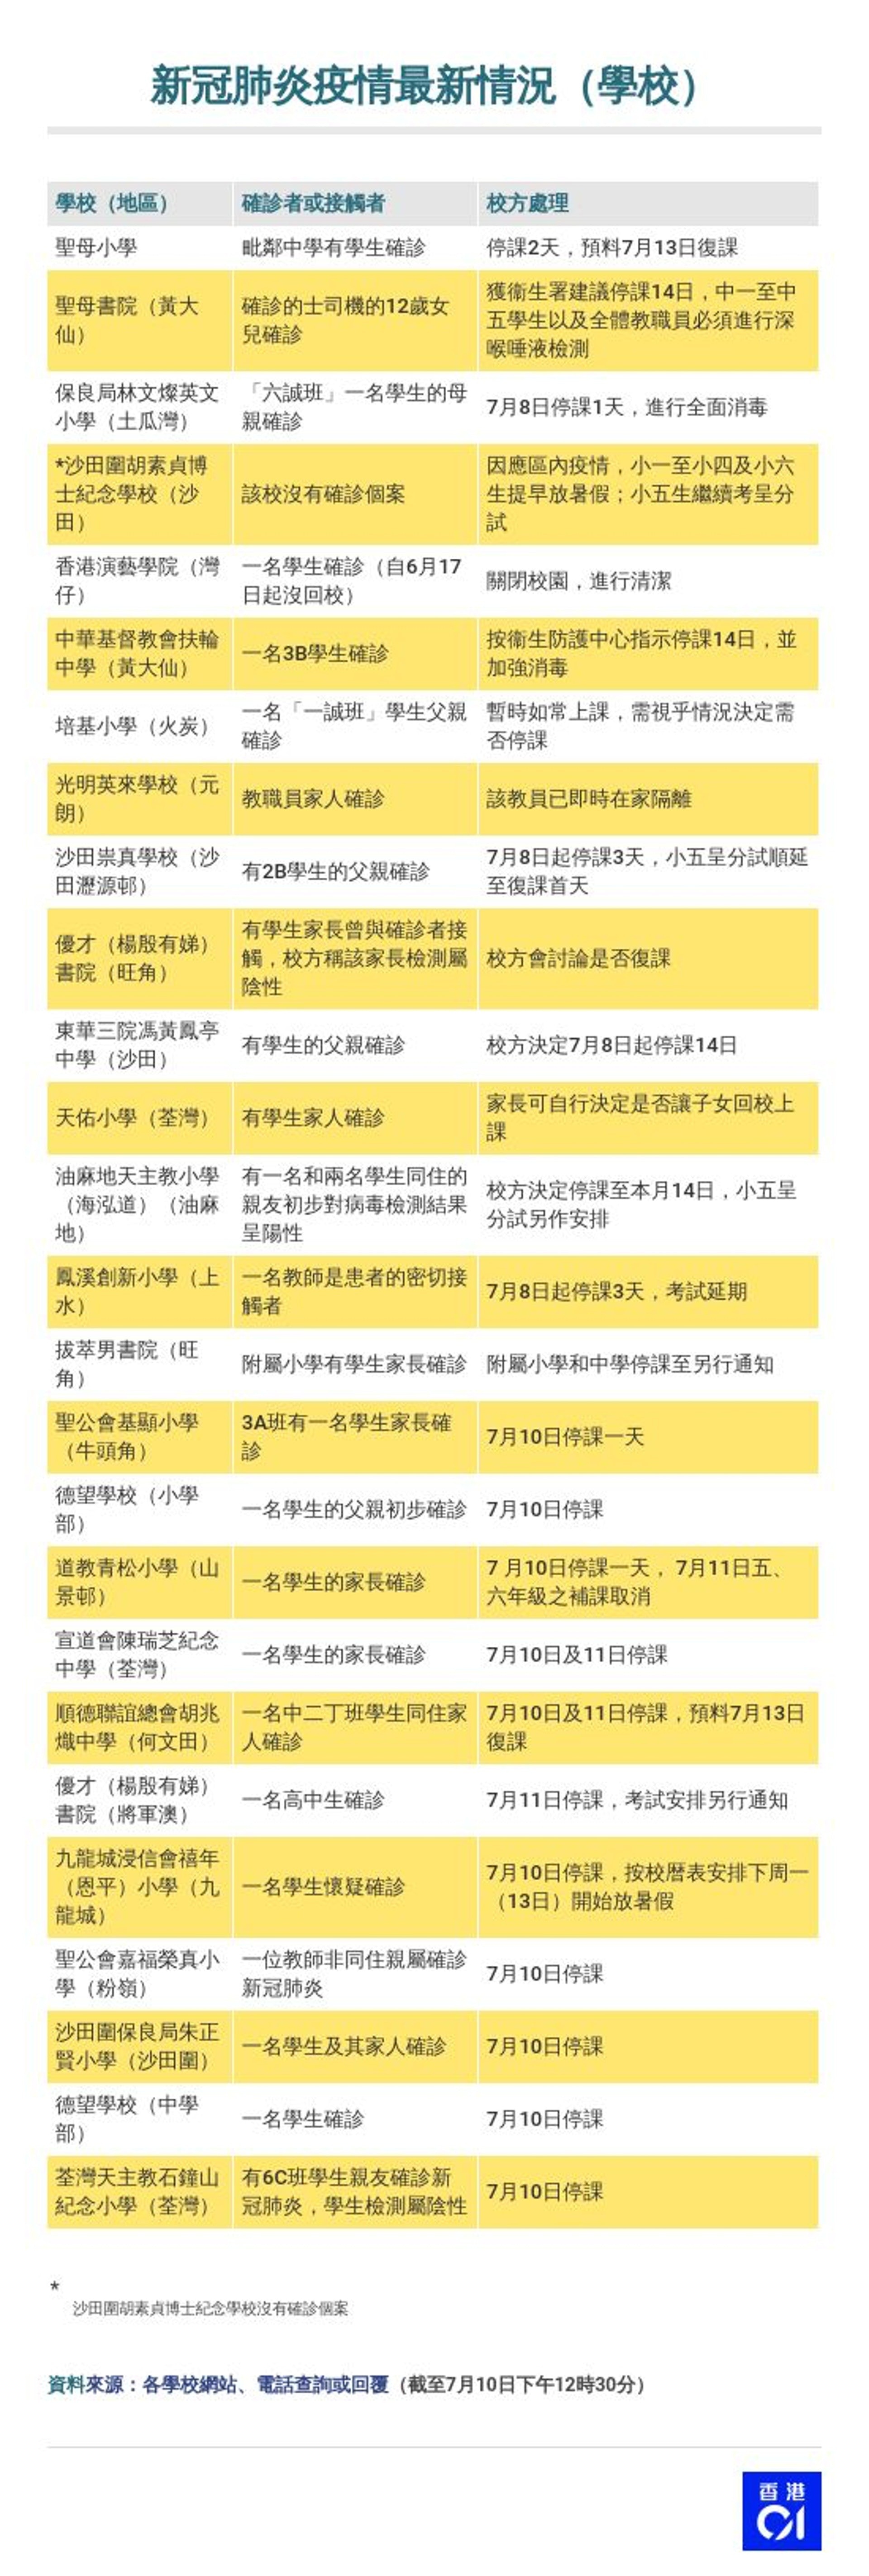 新冠肺炎 教育局將公布下周停課鄧振強 暑期補課轉網上授課 香港01 社會新聞